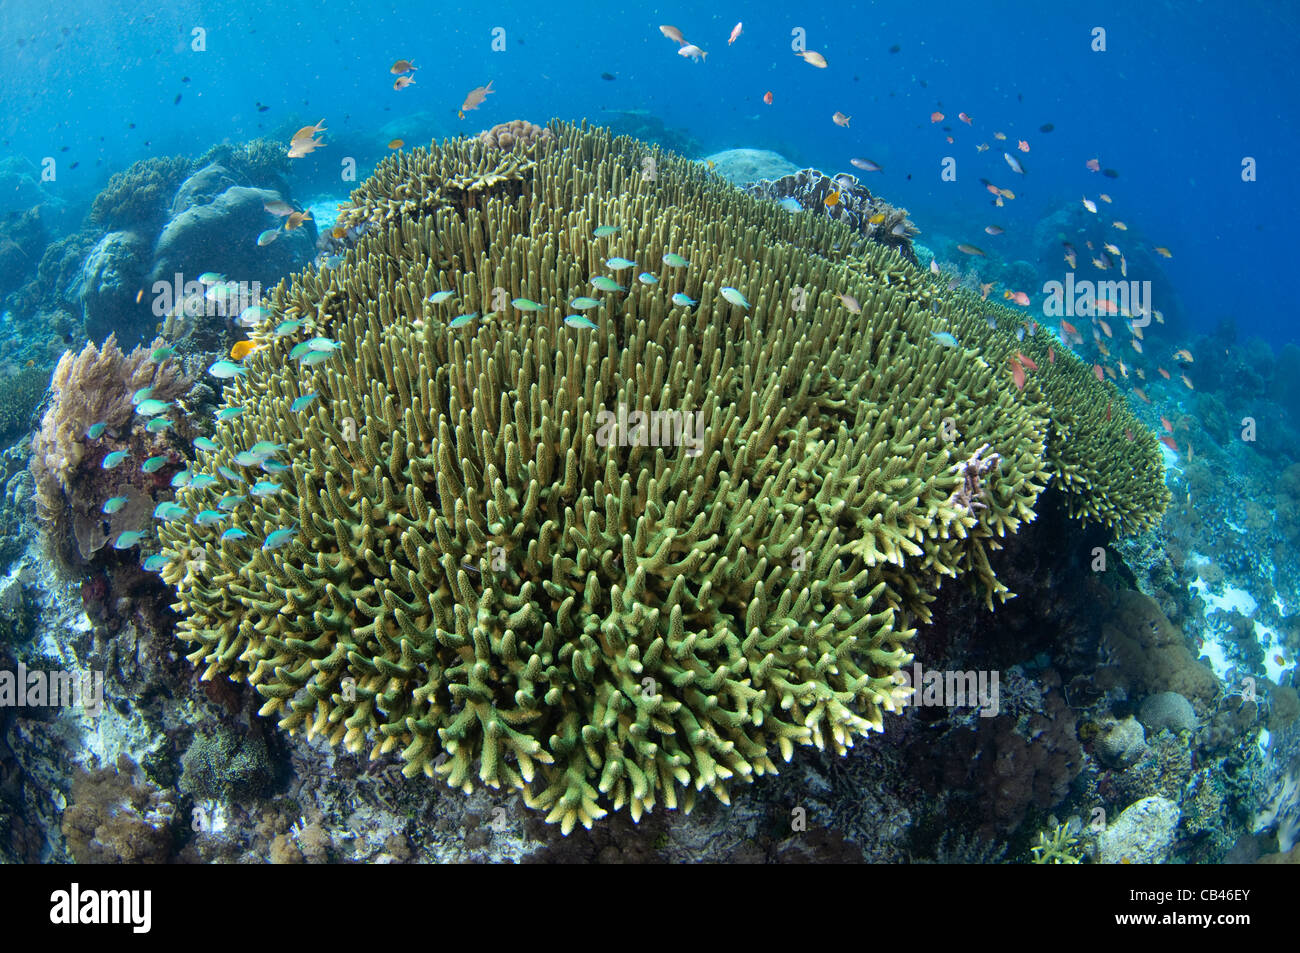 Giardino di corallo duro e la scuola di pesce, Porites, Acropora, Isola Alor, Nusa Tenggara, Indonesia, Oceano Pacifico Foto Stock